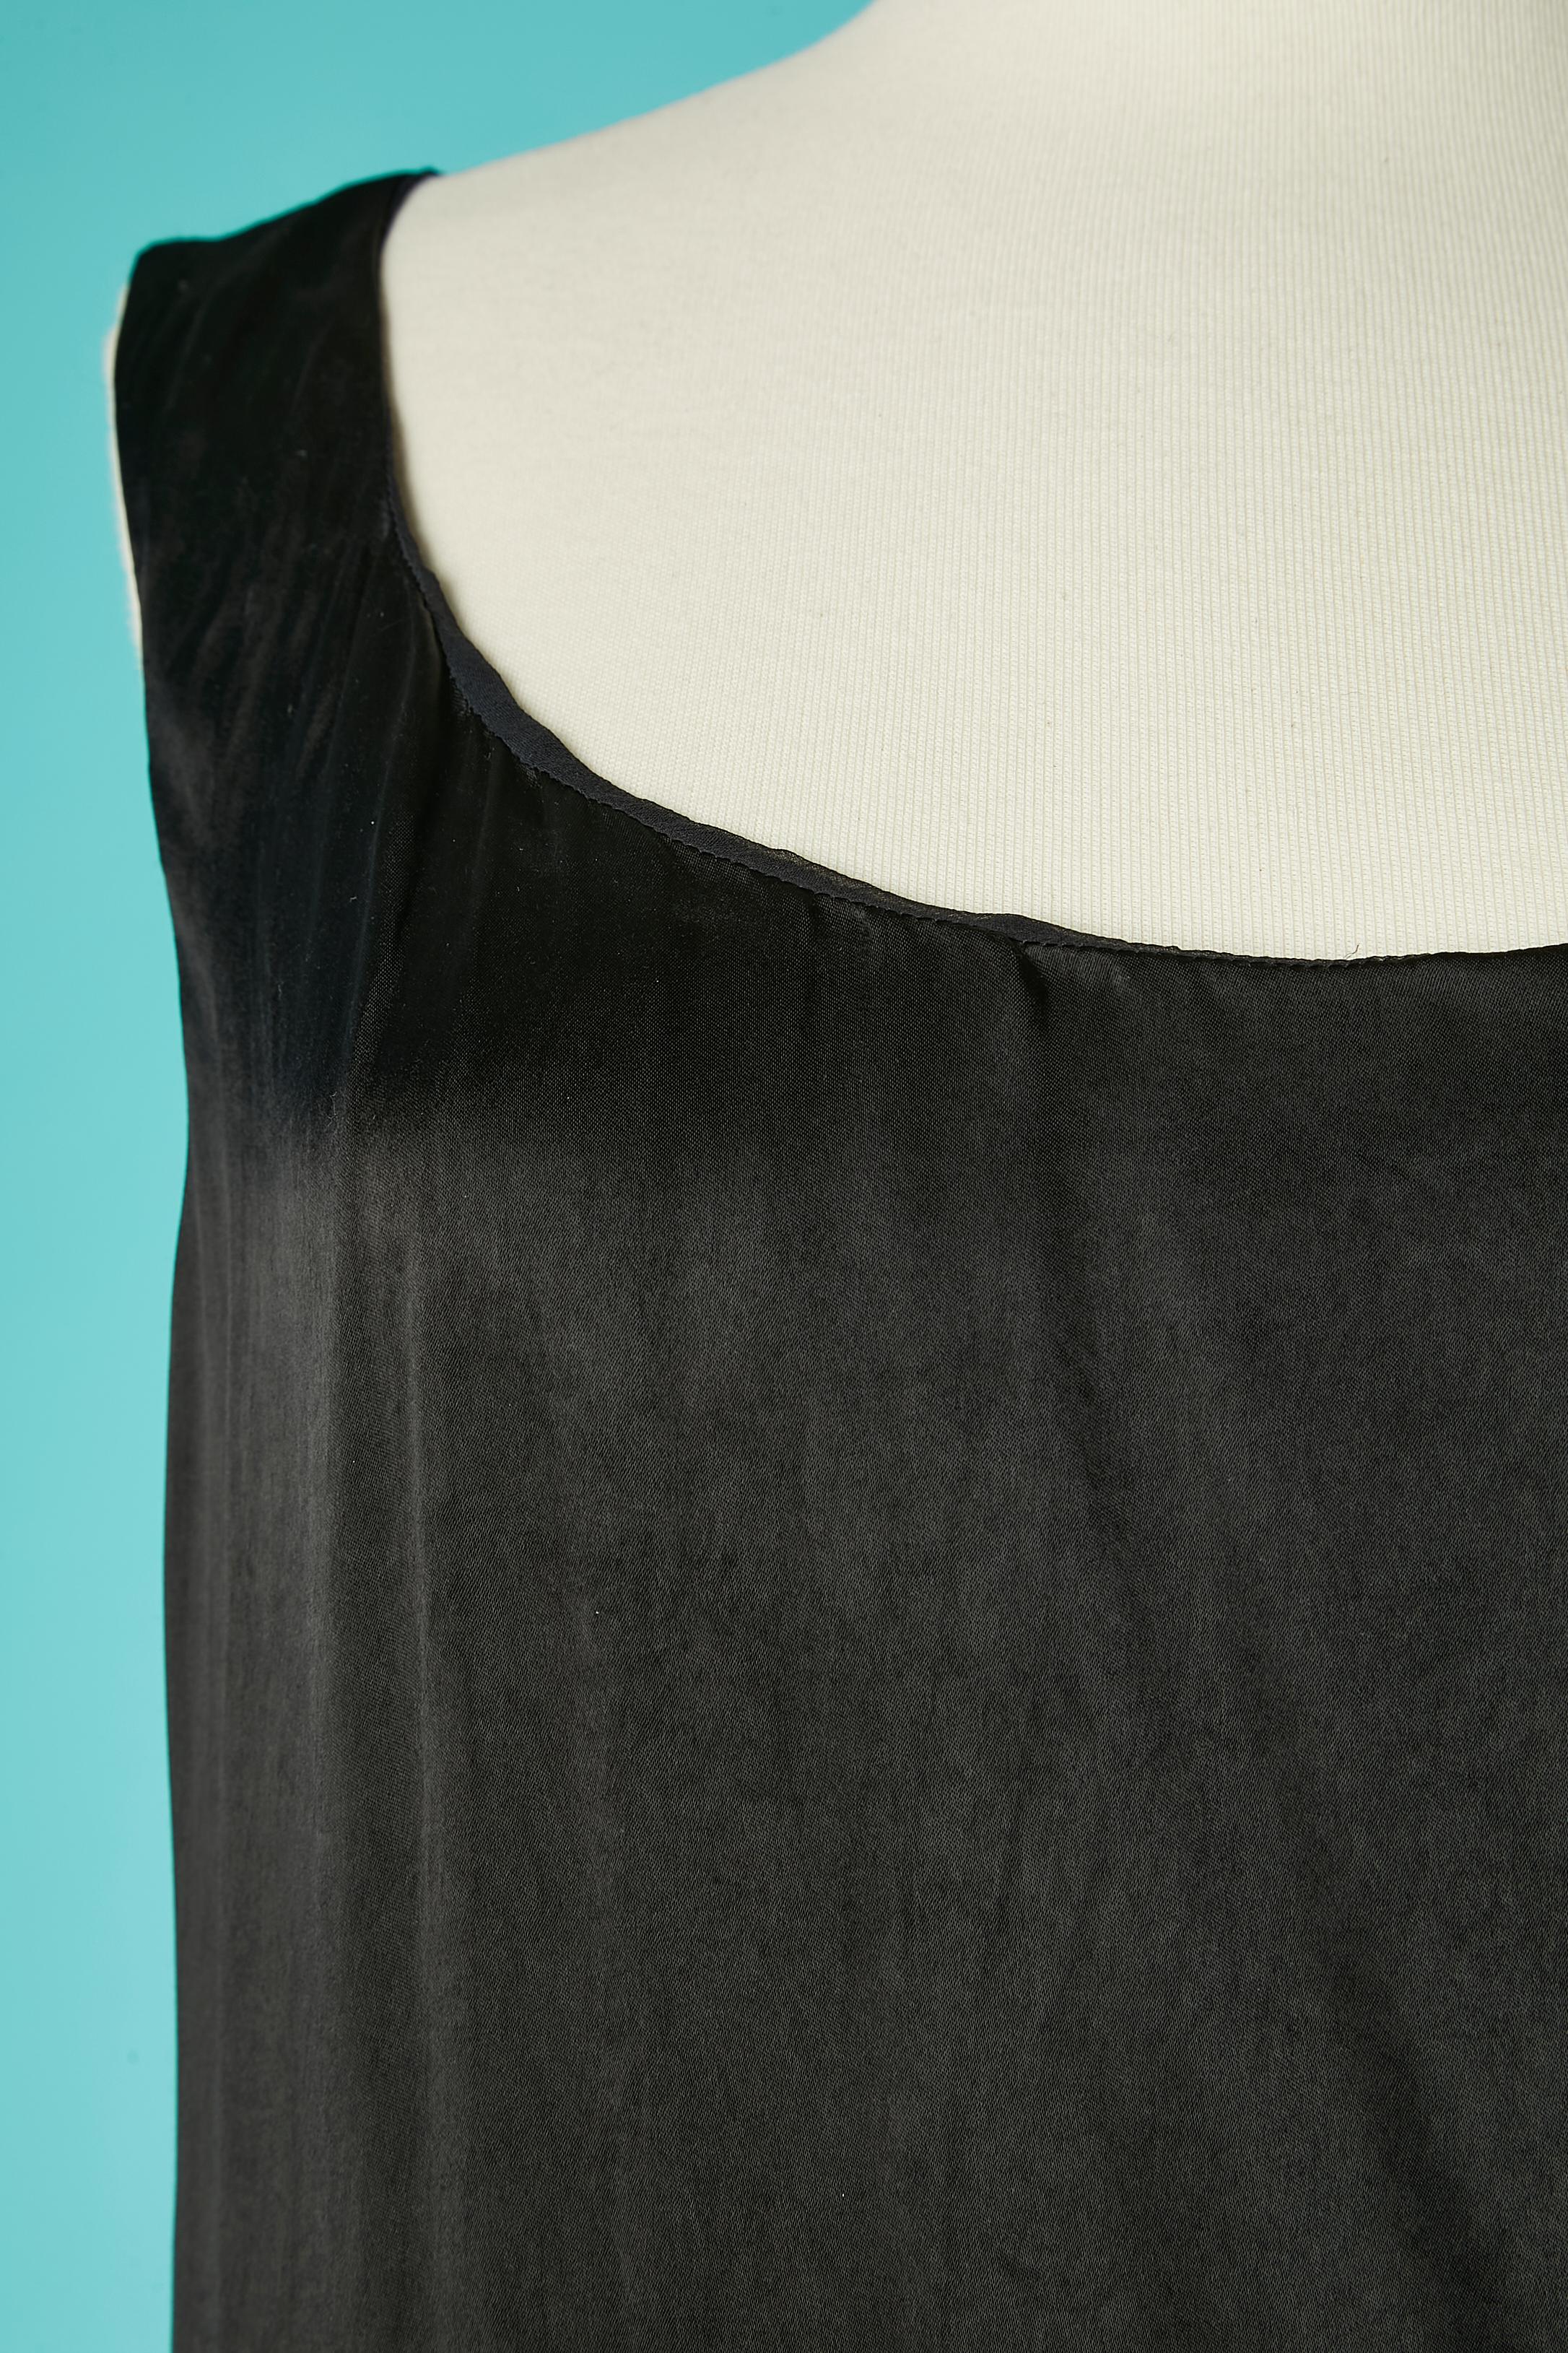 Schwarzes ärmelloses Abendkleid, das auf der linken Hüfte drapiert ist. Hauptstoff: Viskose. Futter: Seidenchiffon, der vom Oberteil bis zur Taille reicht (Gummiband in der Taille an der Seide befestigt) 
Asymmetrisch .
Diese Kollektion wurde 2012